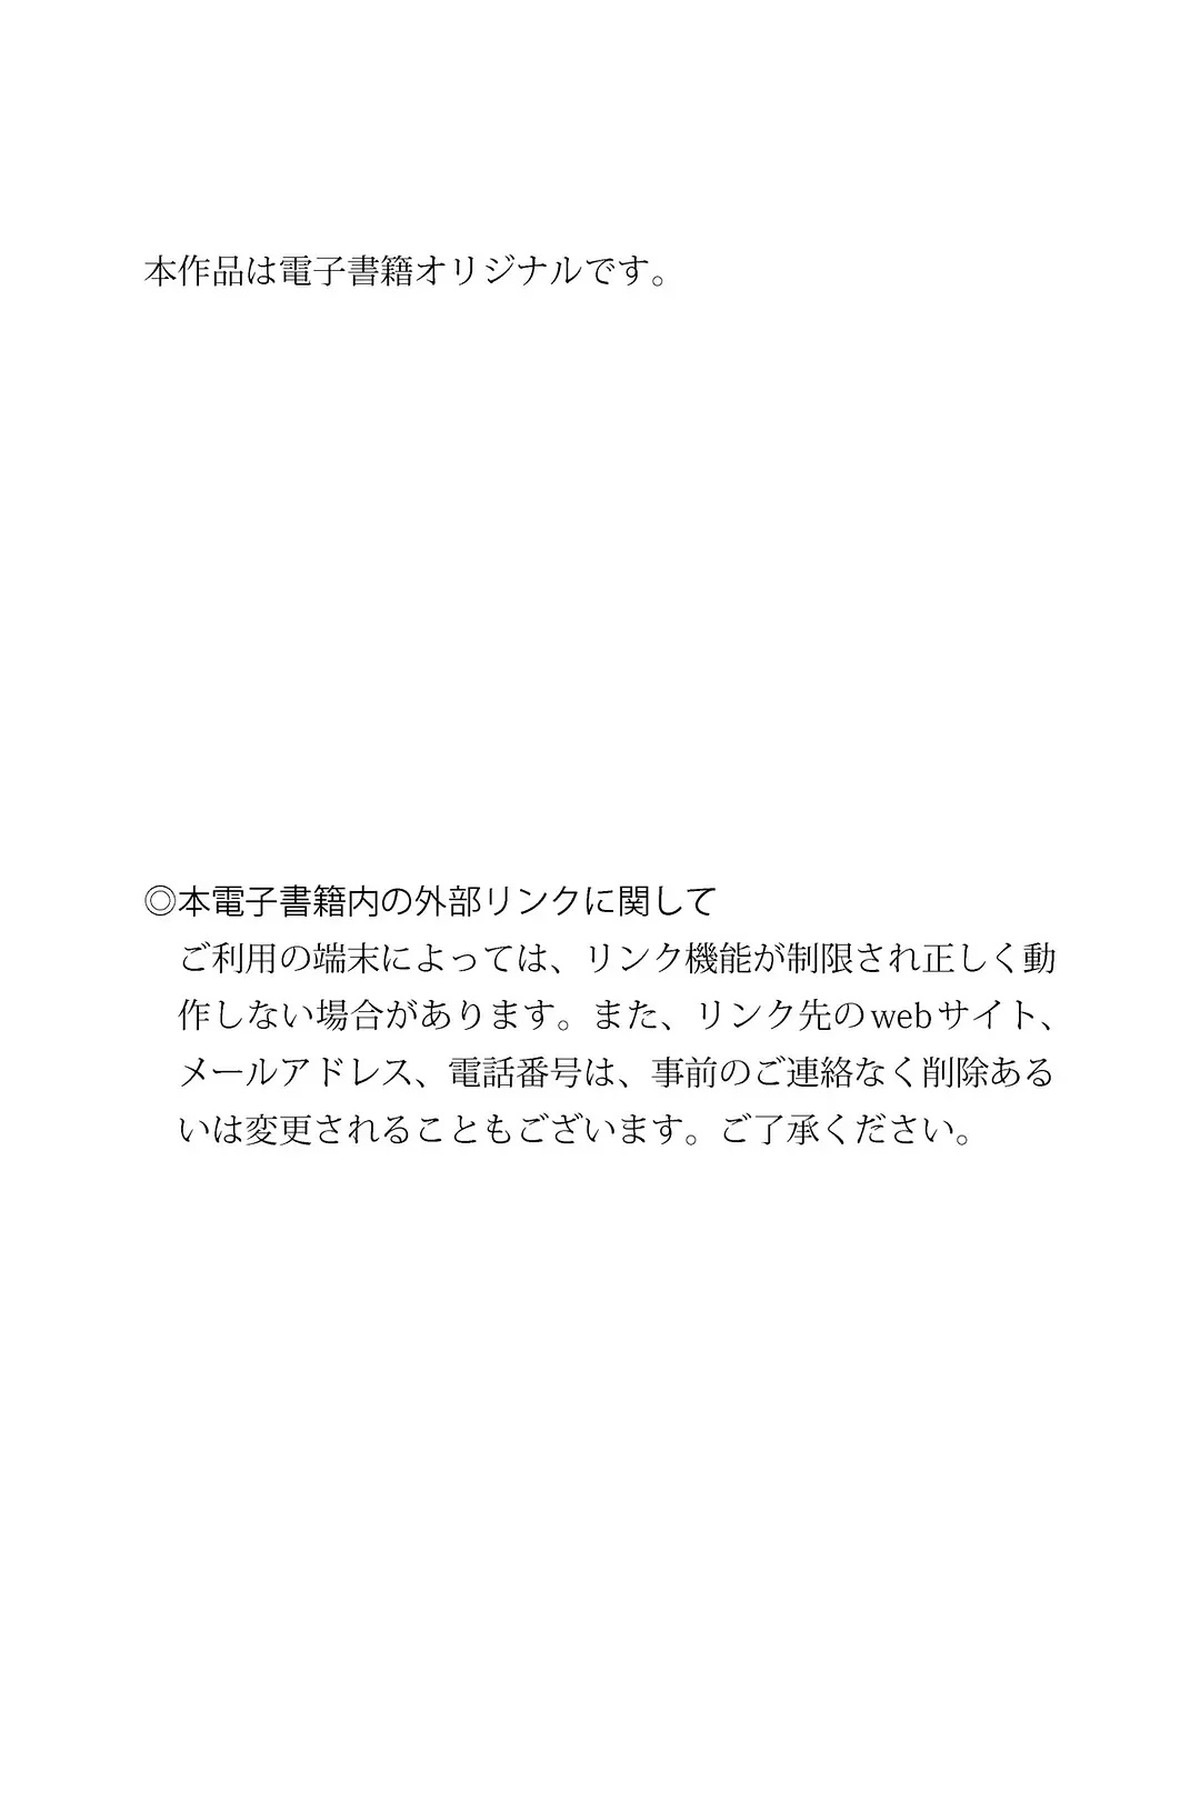 WHITE Graph 2022 12 07 Mika Ichinose 一ノ瀬みか 0047 6629646409.jpg